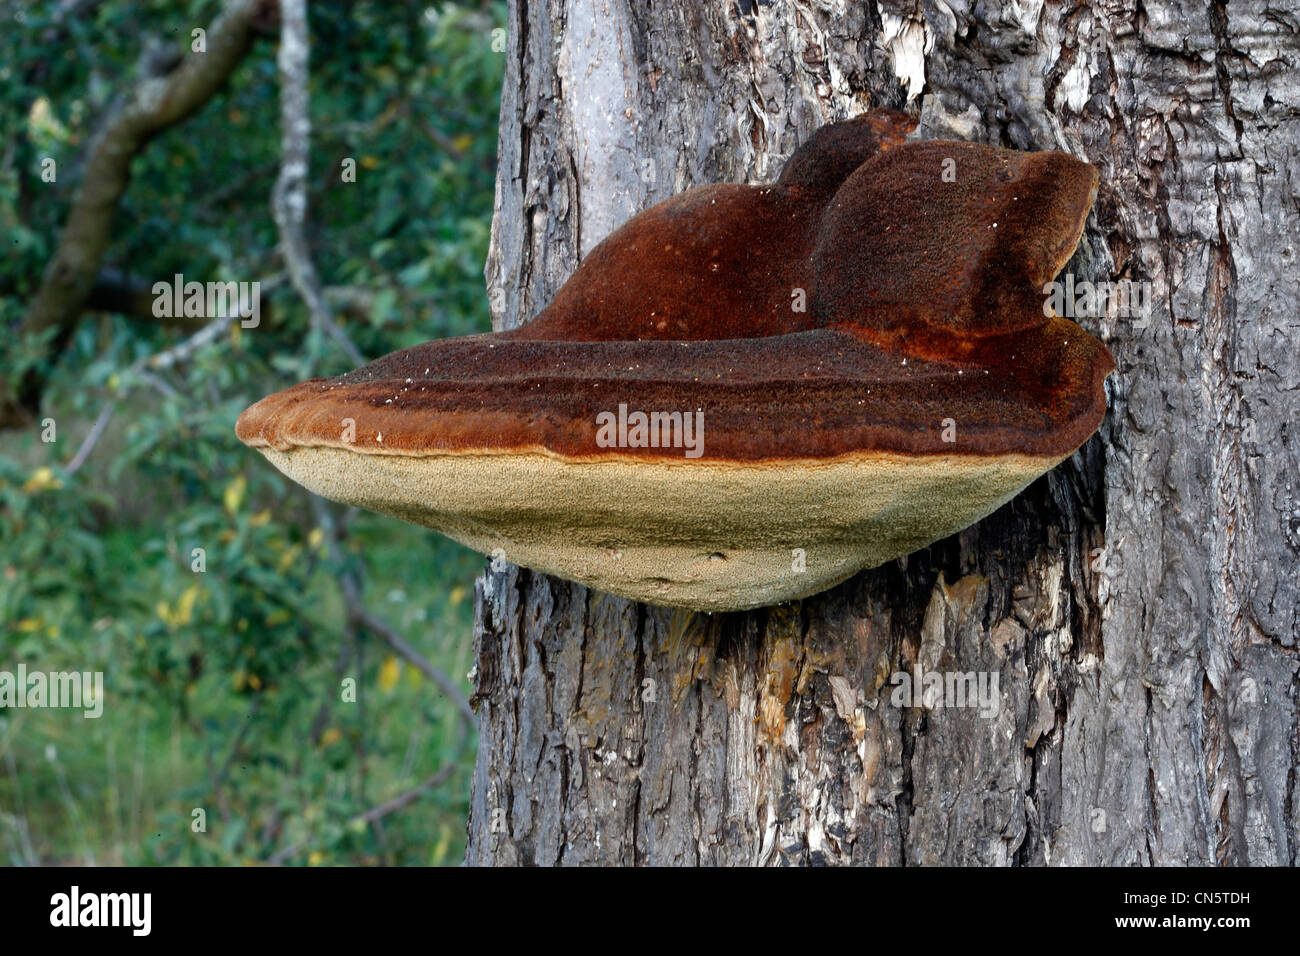 Francia, Bas Rhin, woody Polyporus sobre un árbol frutal Foto de stock